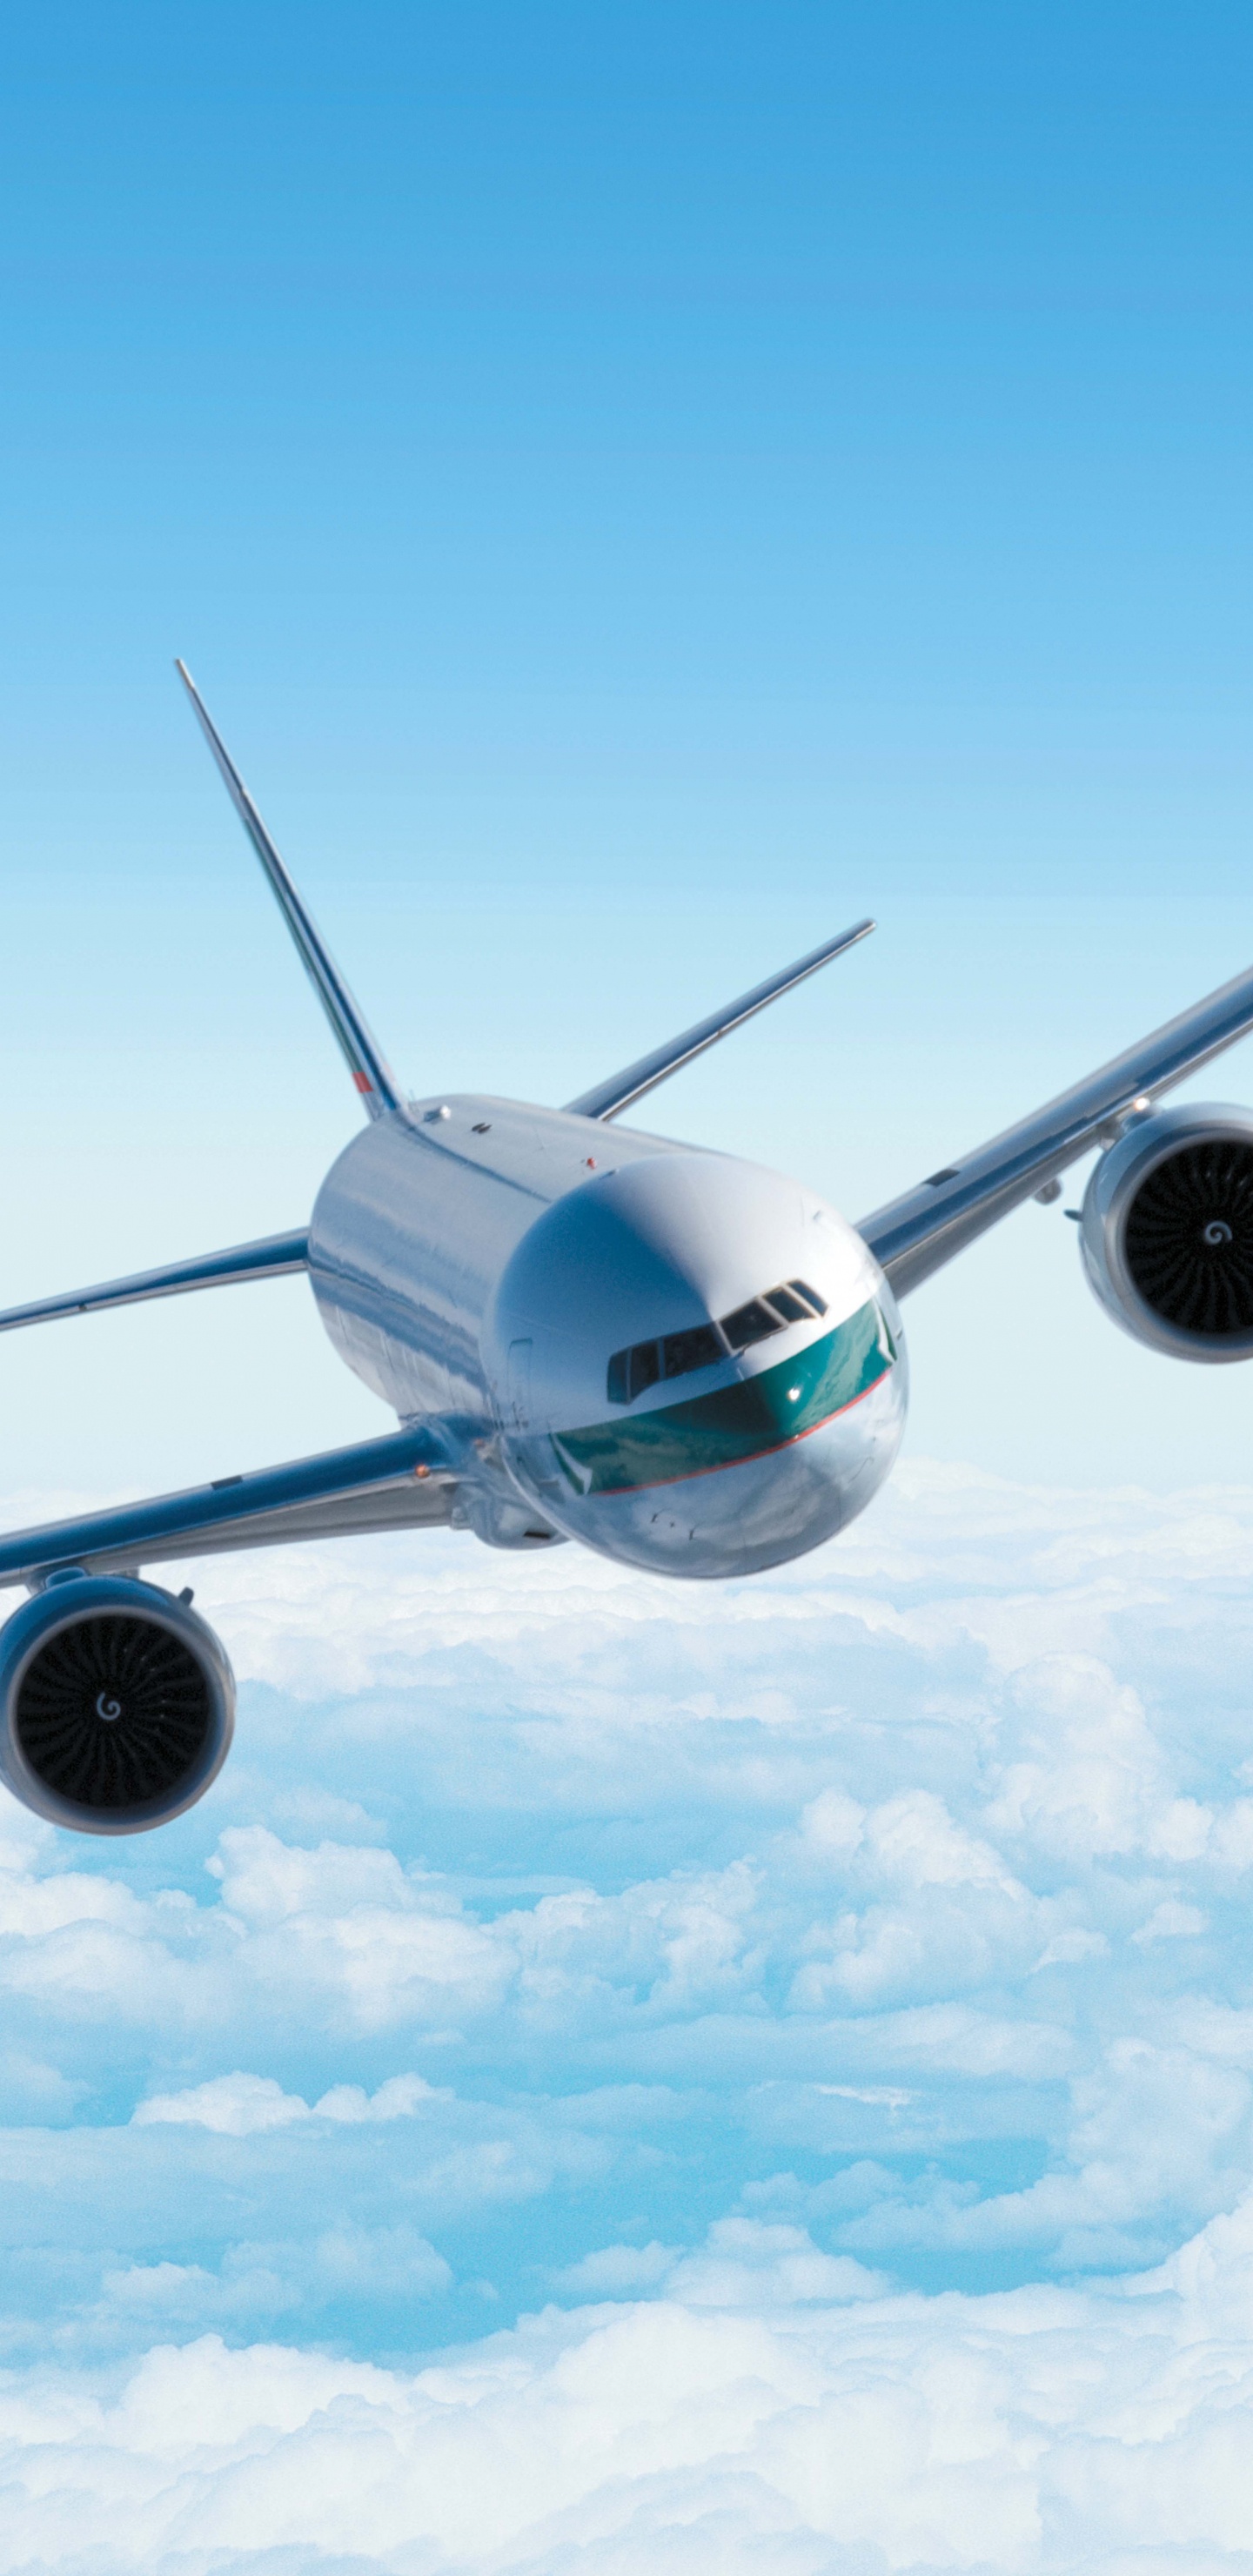 Weißes Flugzeug in Der Luft Unter Blauem Himmel Tagsüber. Wallpaper in 1440x2960 Resolution